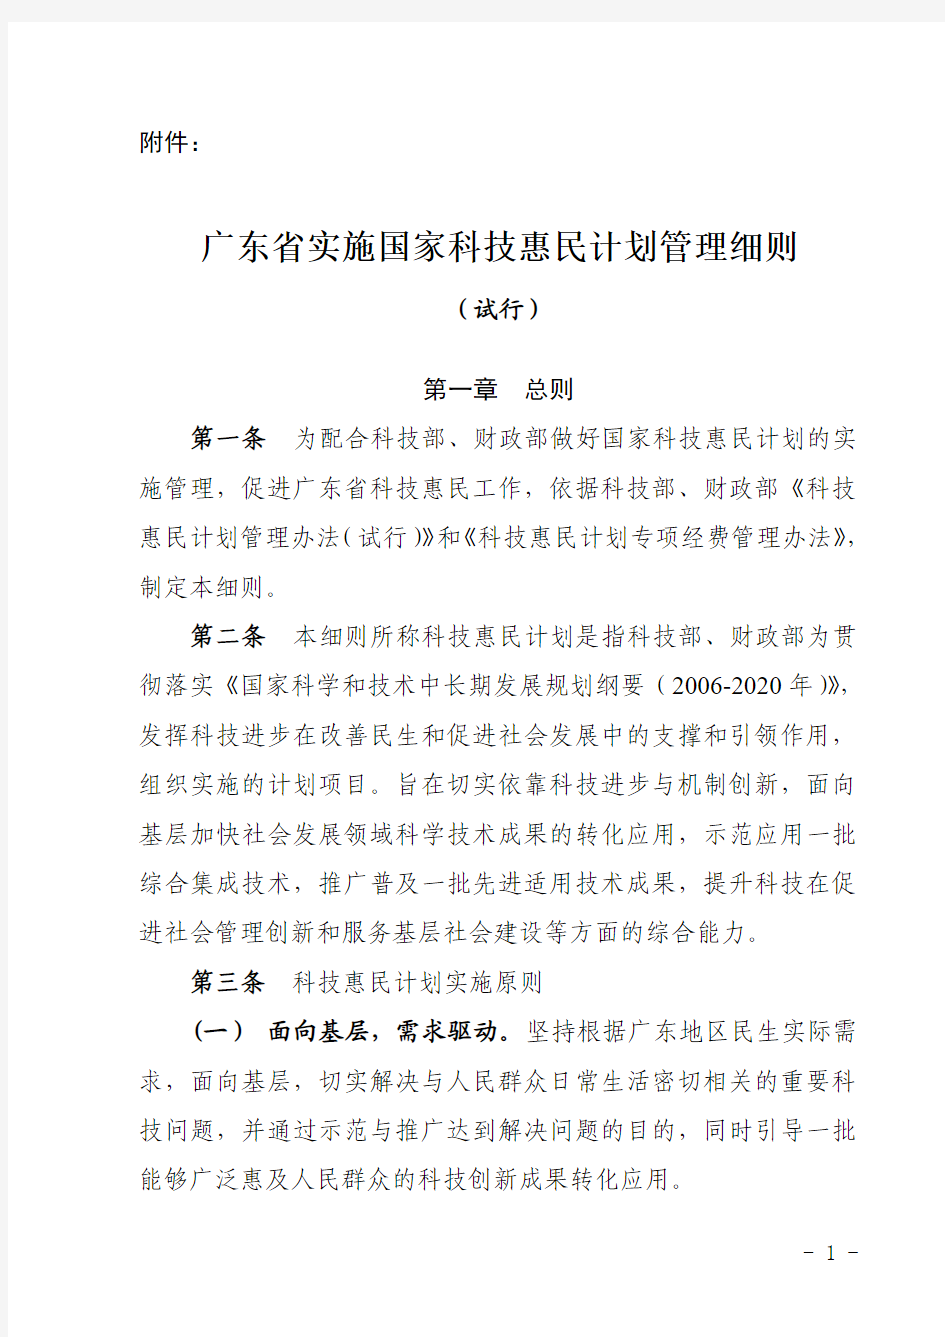 2013年 广东省实施国家科技惠民计划管理细则(试行)